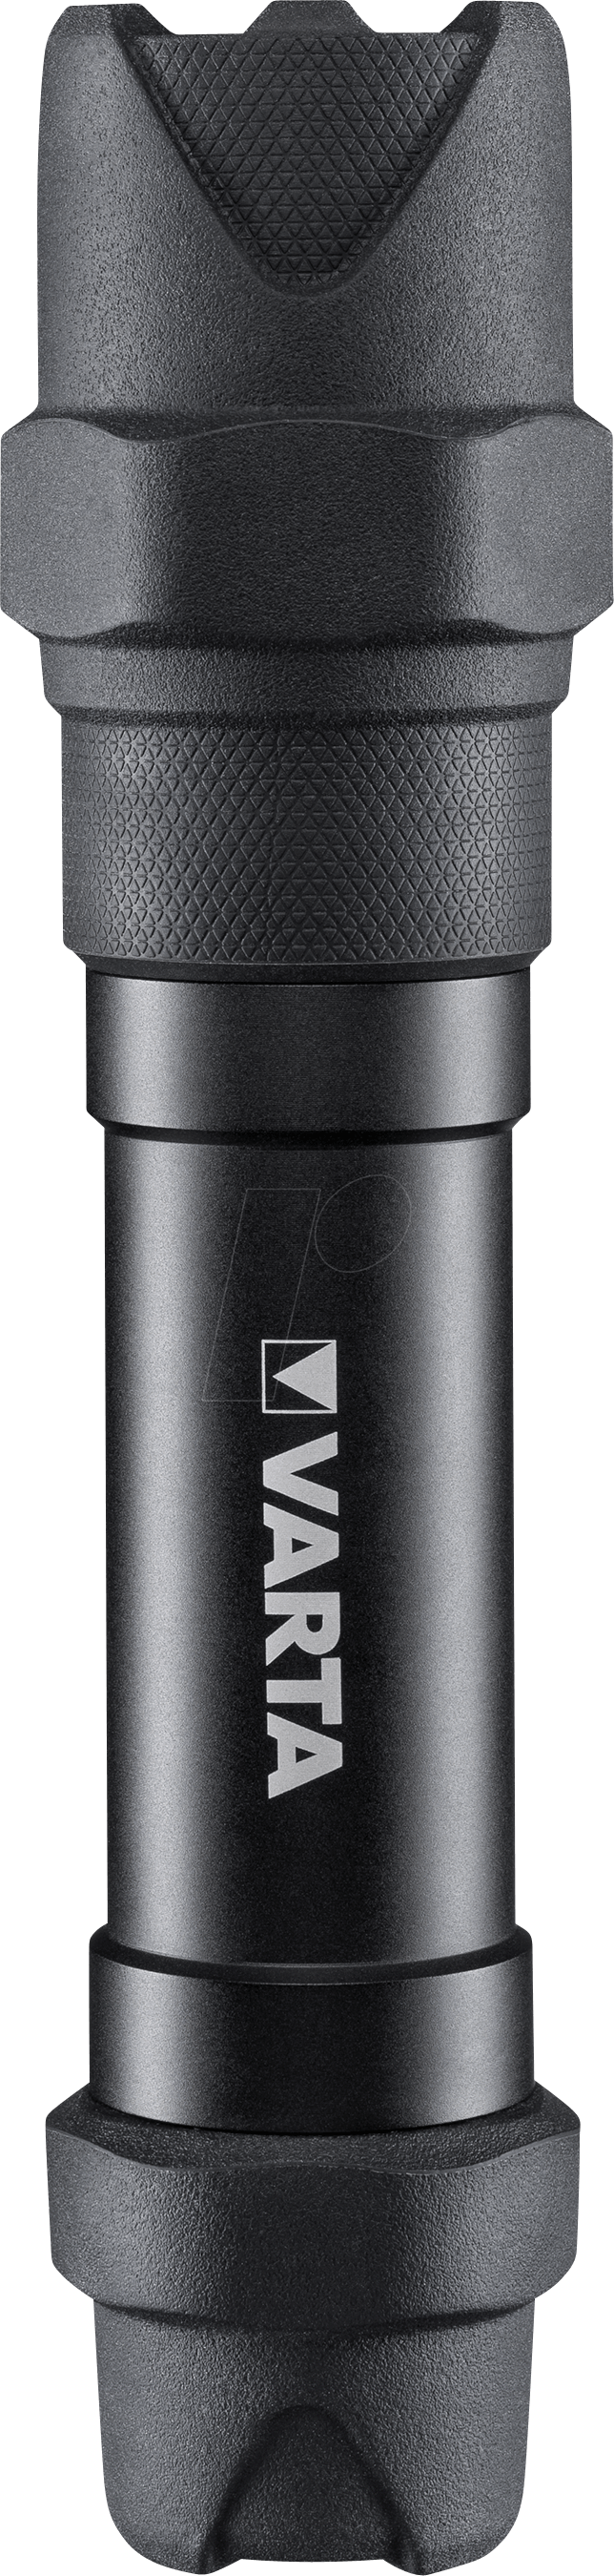 VAR IN F30 PRO - LED-Taschenlampe Indestructible, F30 PRO, schwarz, Alu von Varta